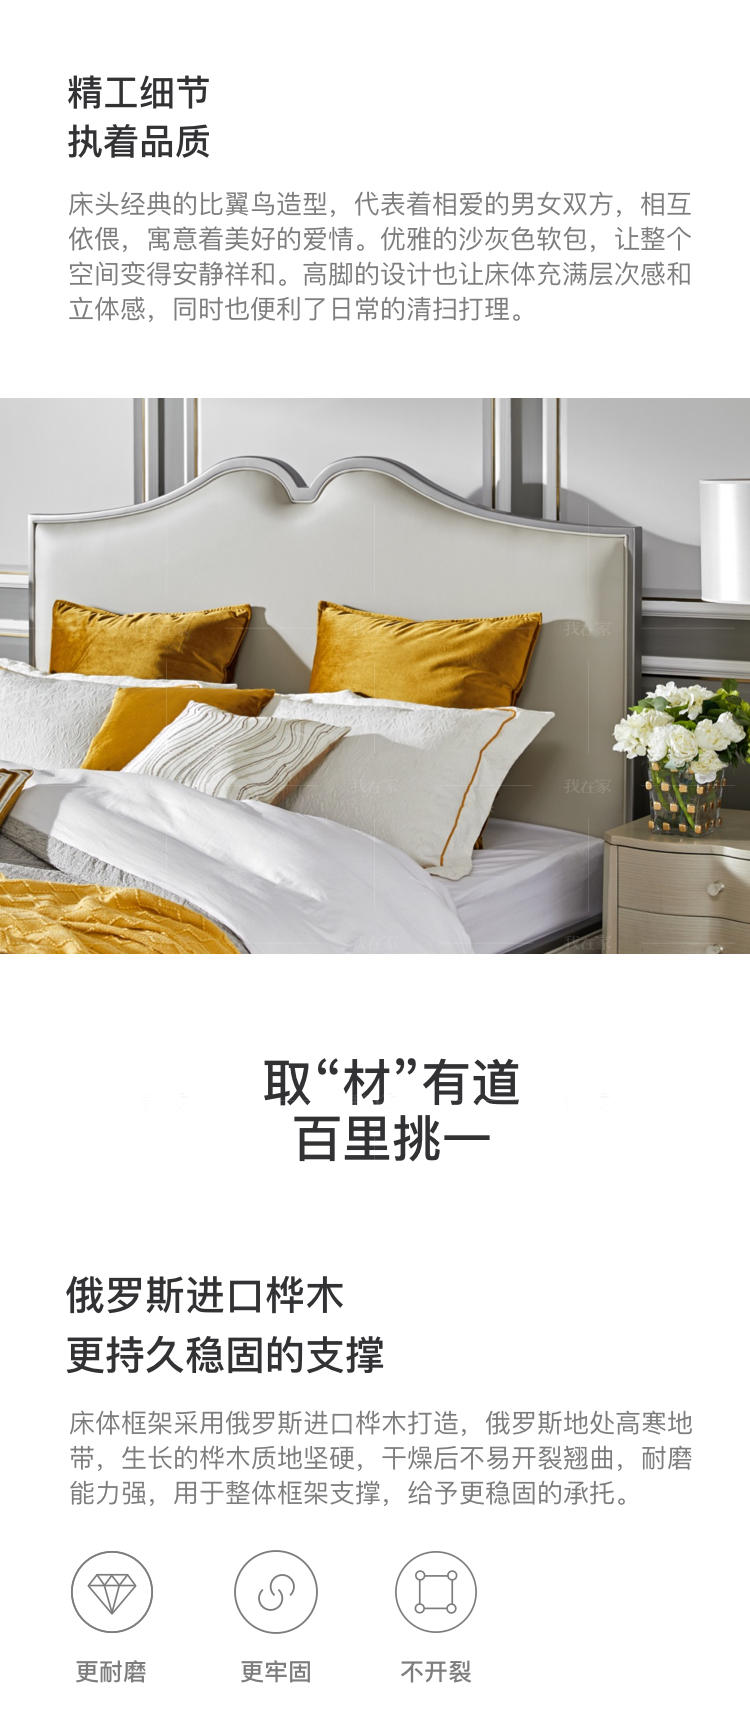 轻奢美式风格勃朗特双人床的家具详细介绍